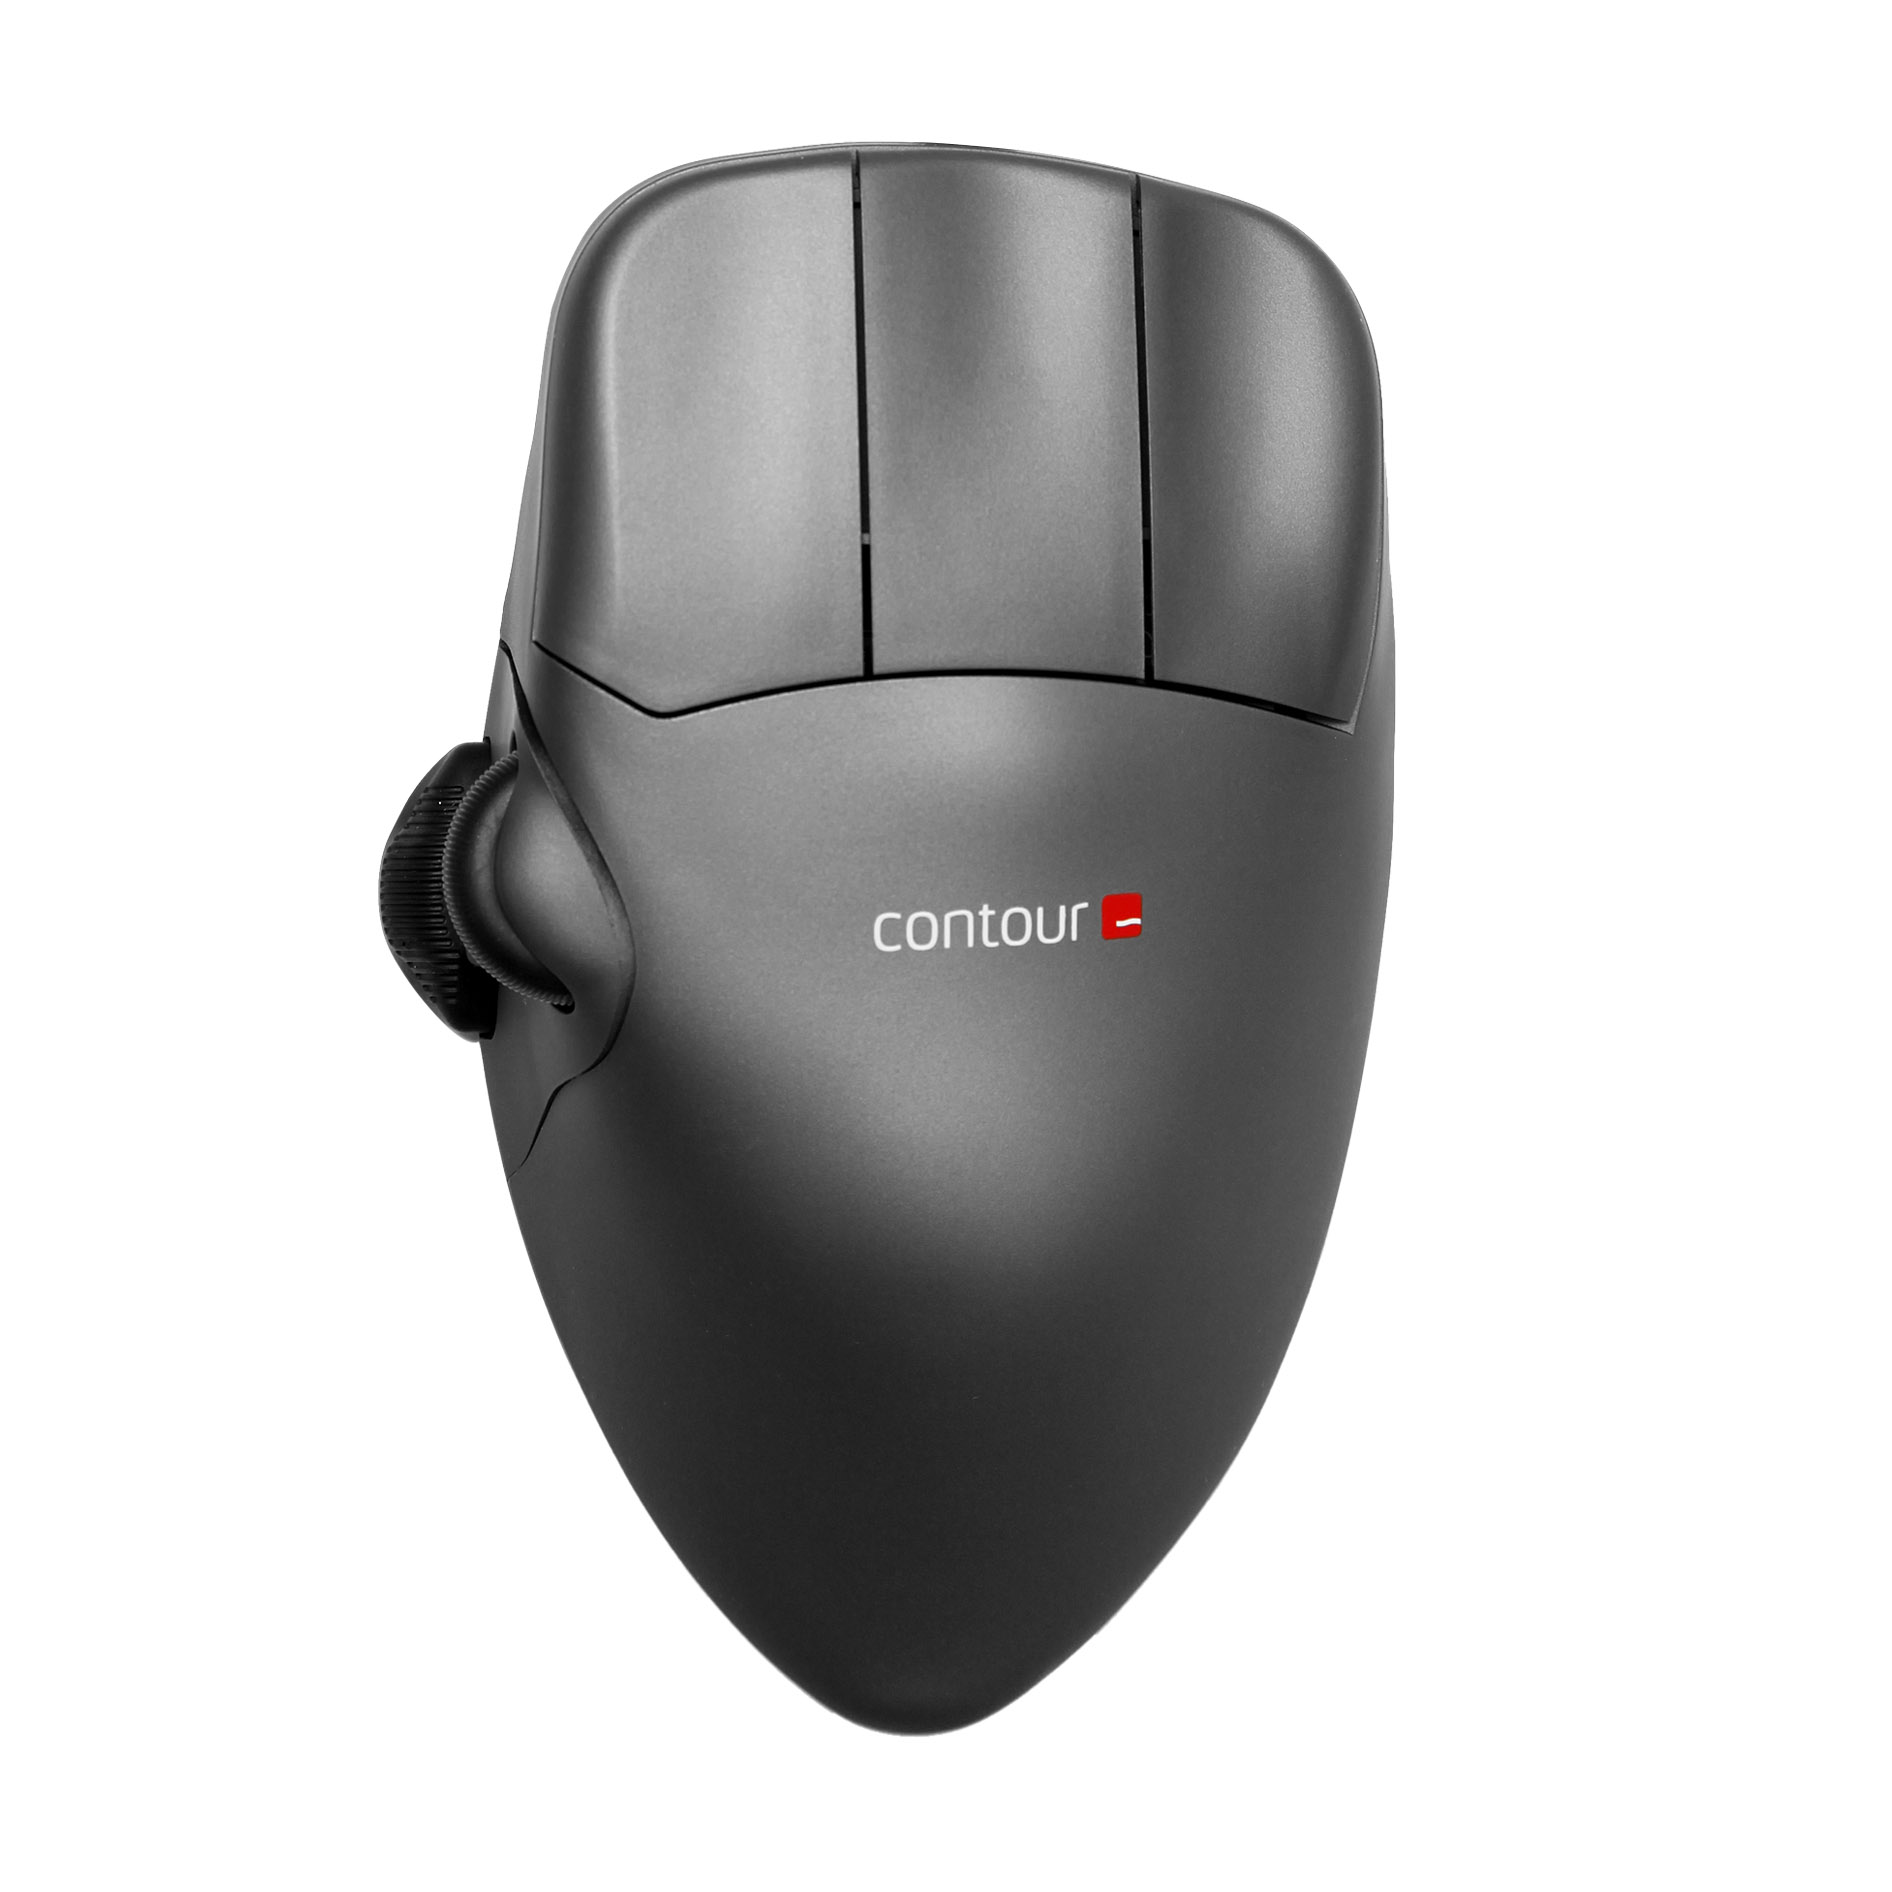 Contour Mouse – Contour Design